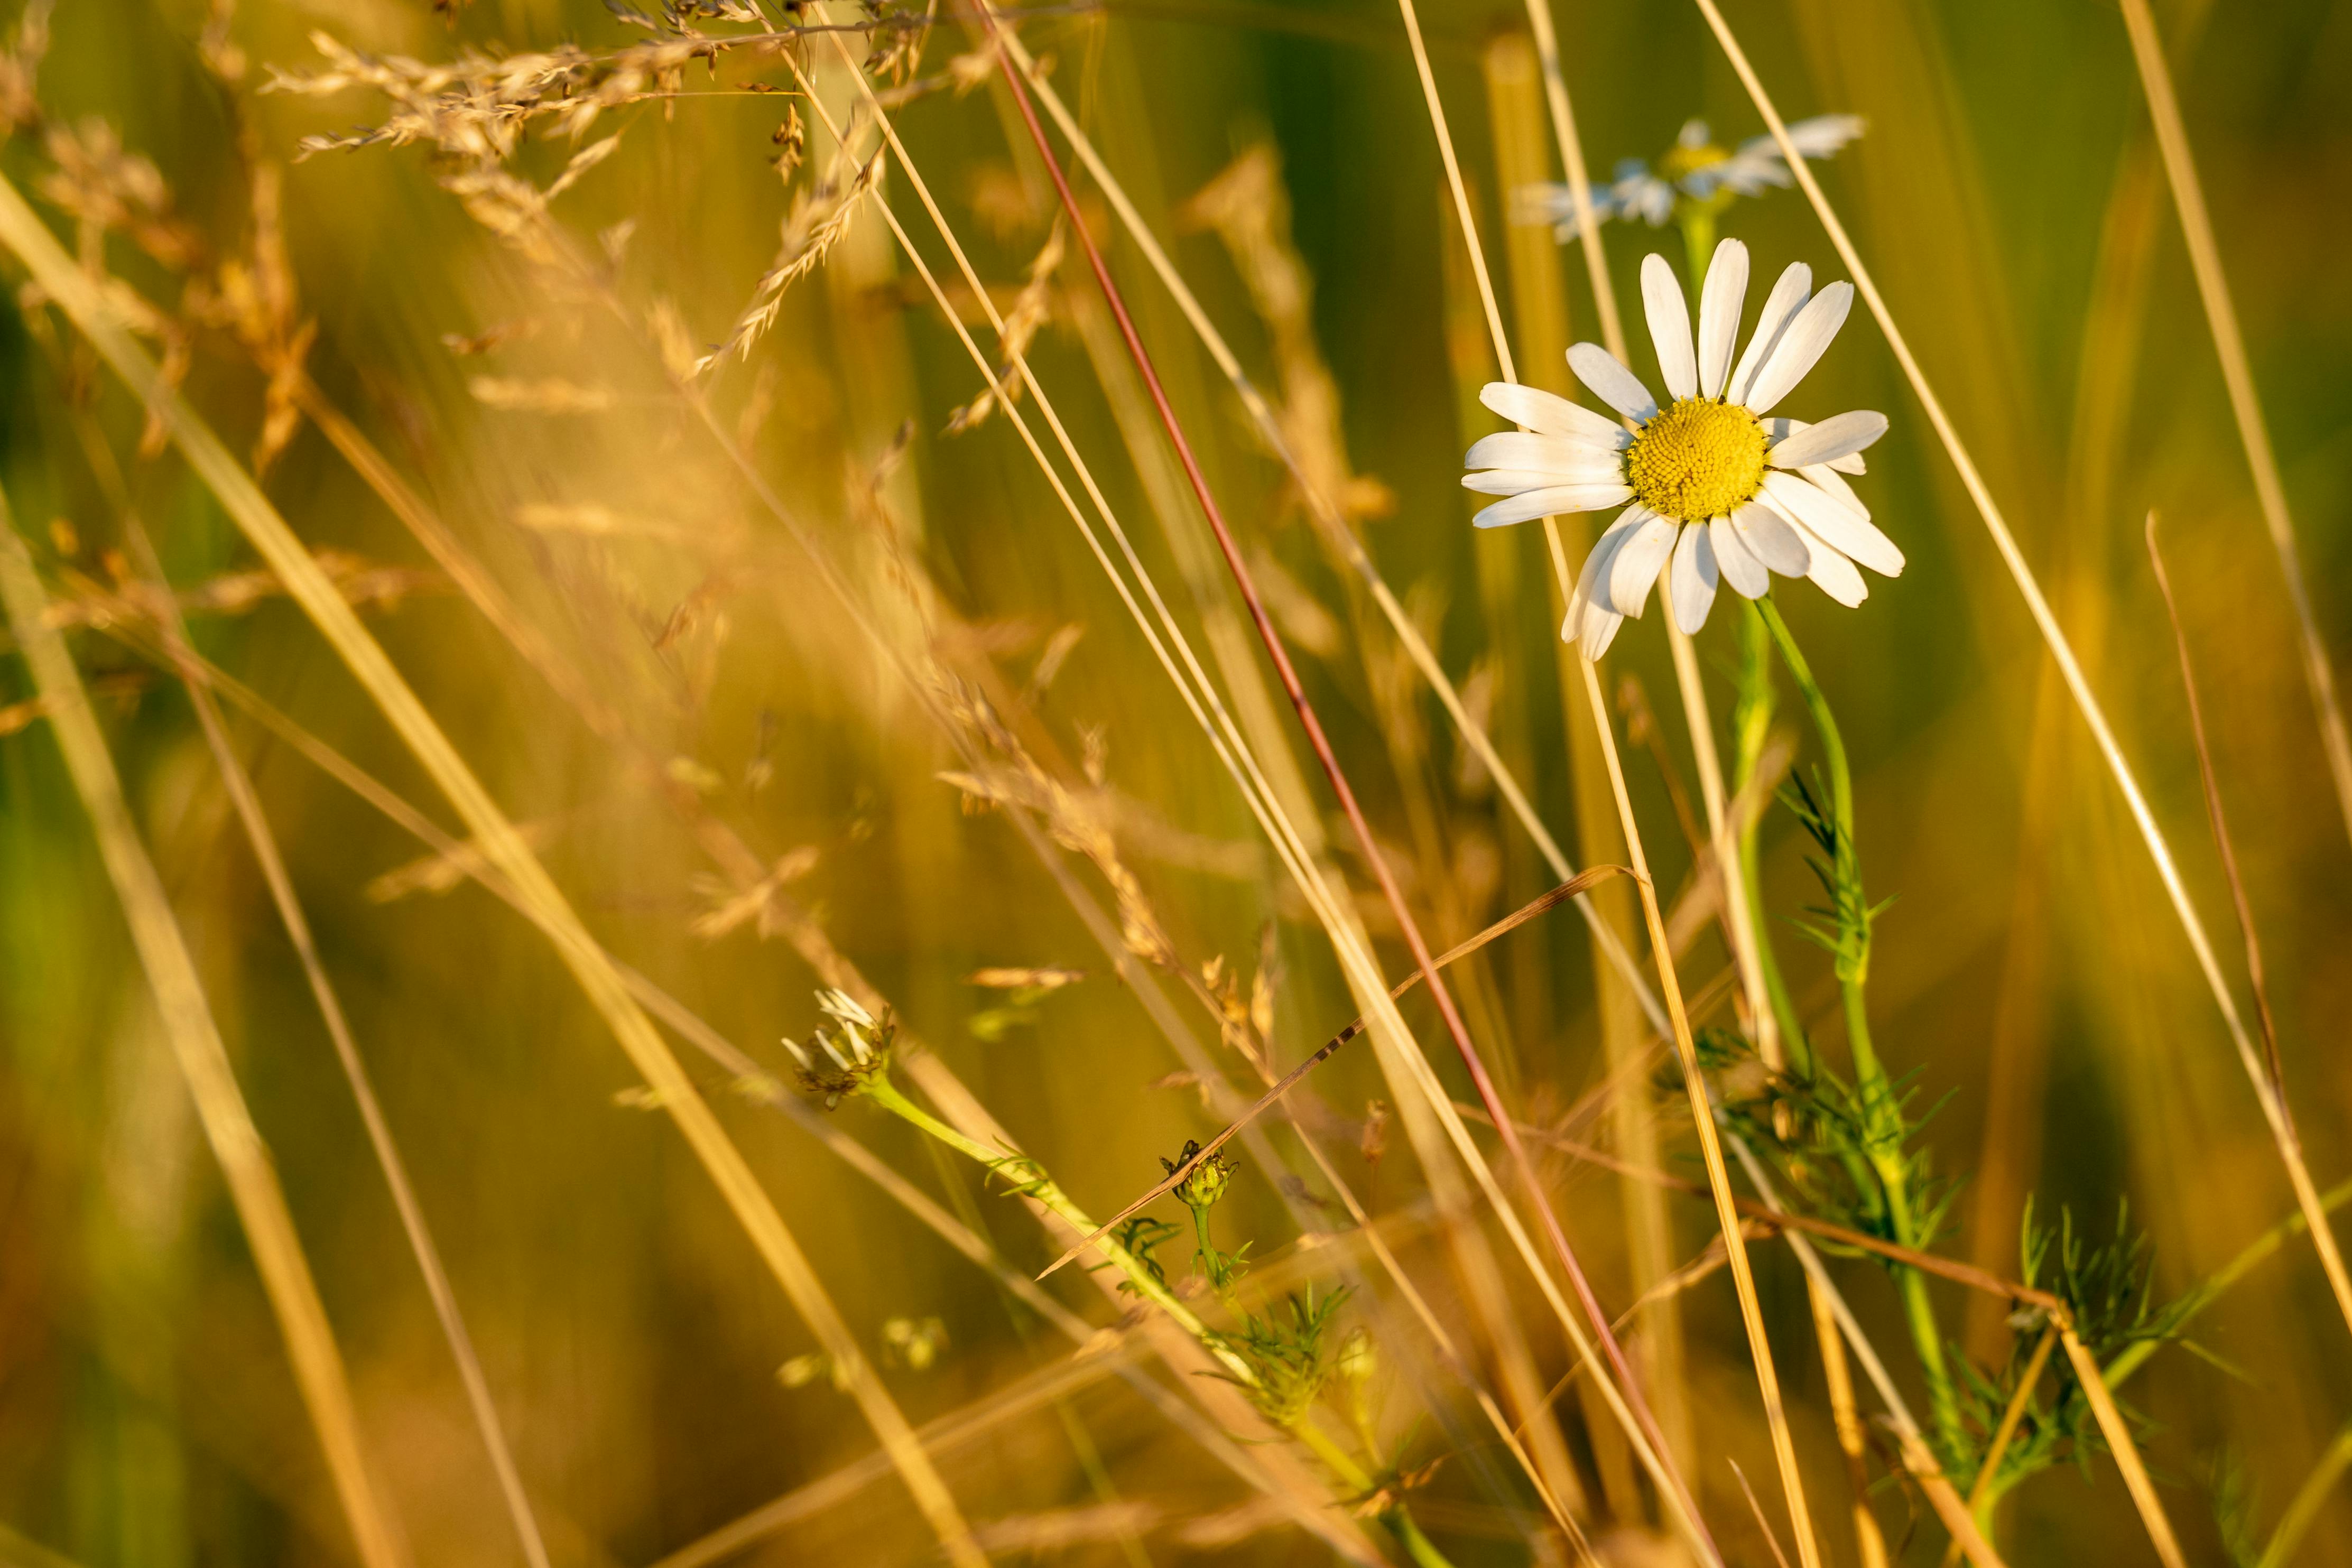 White Daisy Flower - Hoa cúc trắng: Với vẻ đẹp tinh khiết và thanh lịch, hoa cúc trắng tượng trưng cho sự trong trắng, tình yêu và trung thực. Khung hình hoa cúc trắng sẽ mang đến cho bạn cảm giác đầy lãng mạn và tình cảm, giúp bạn thư giãn mỗi khi nhìn vào màn hình máy tính.